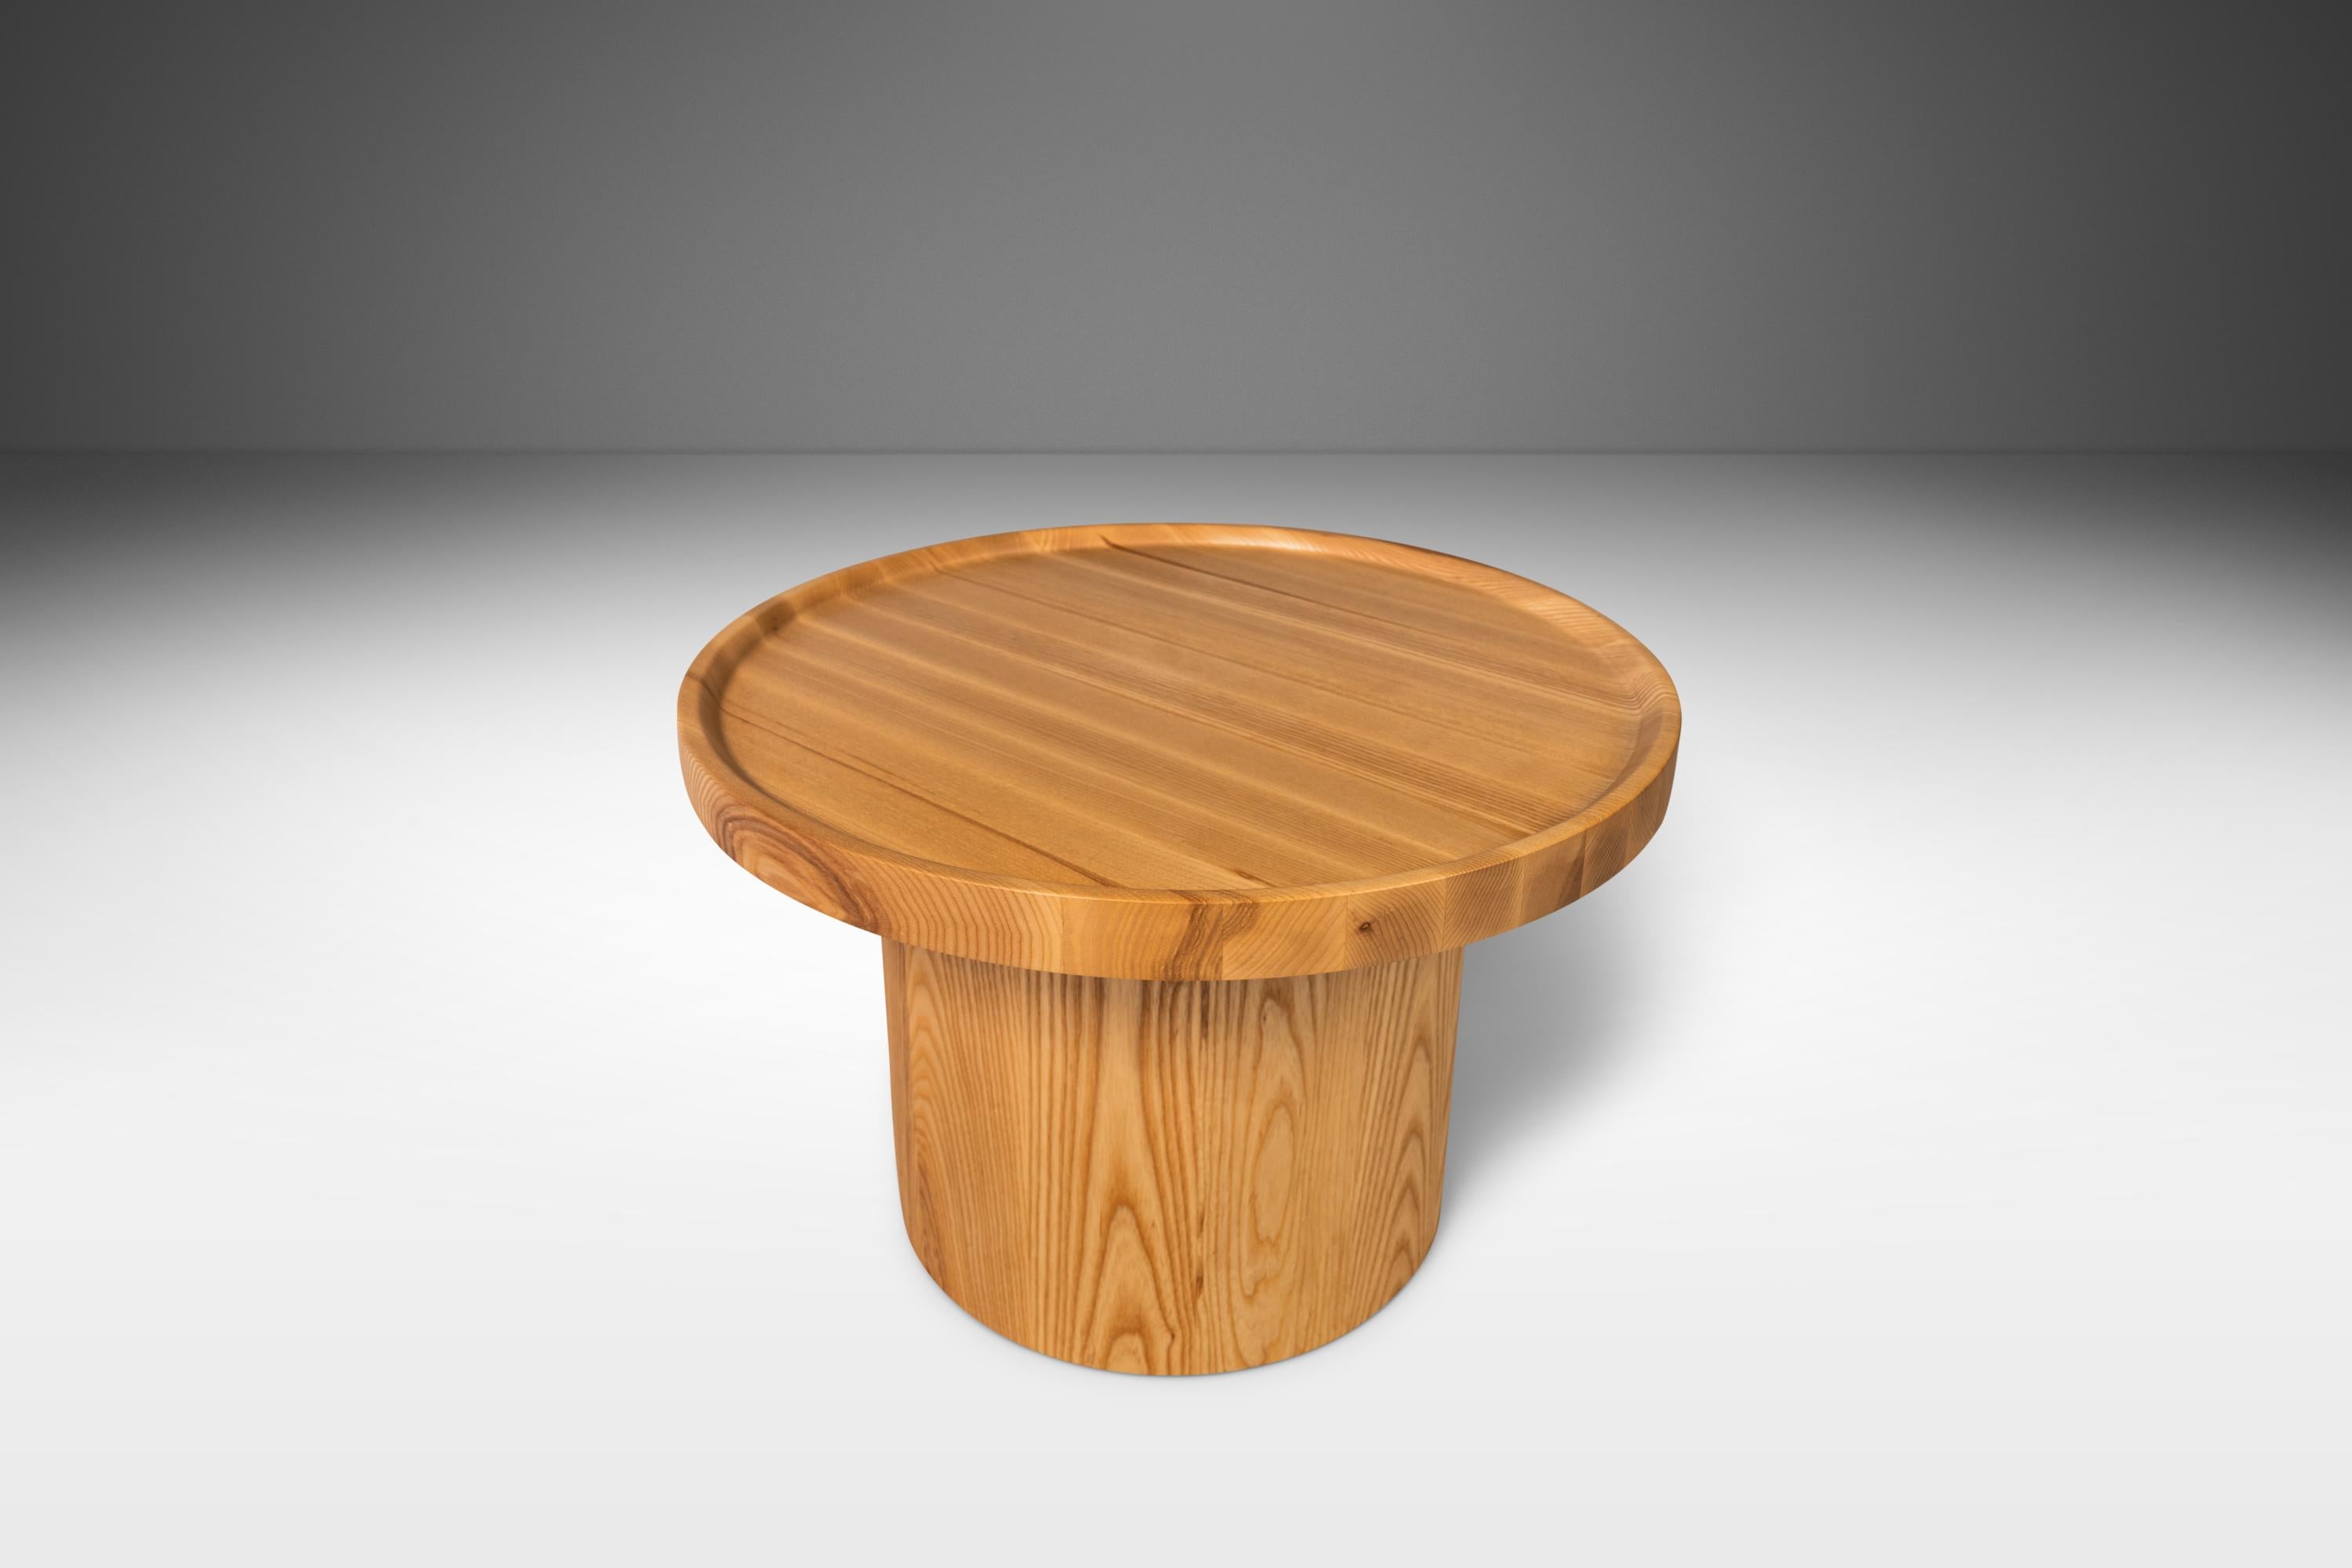 Combinant des matériaux naturels avec des lignes classiques et épurées, des formes arrondies et des surfaces lisses, cette table basse est la définition même de 